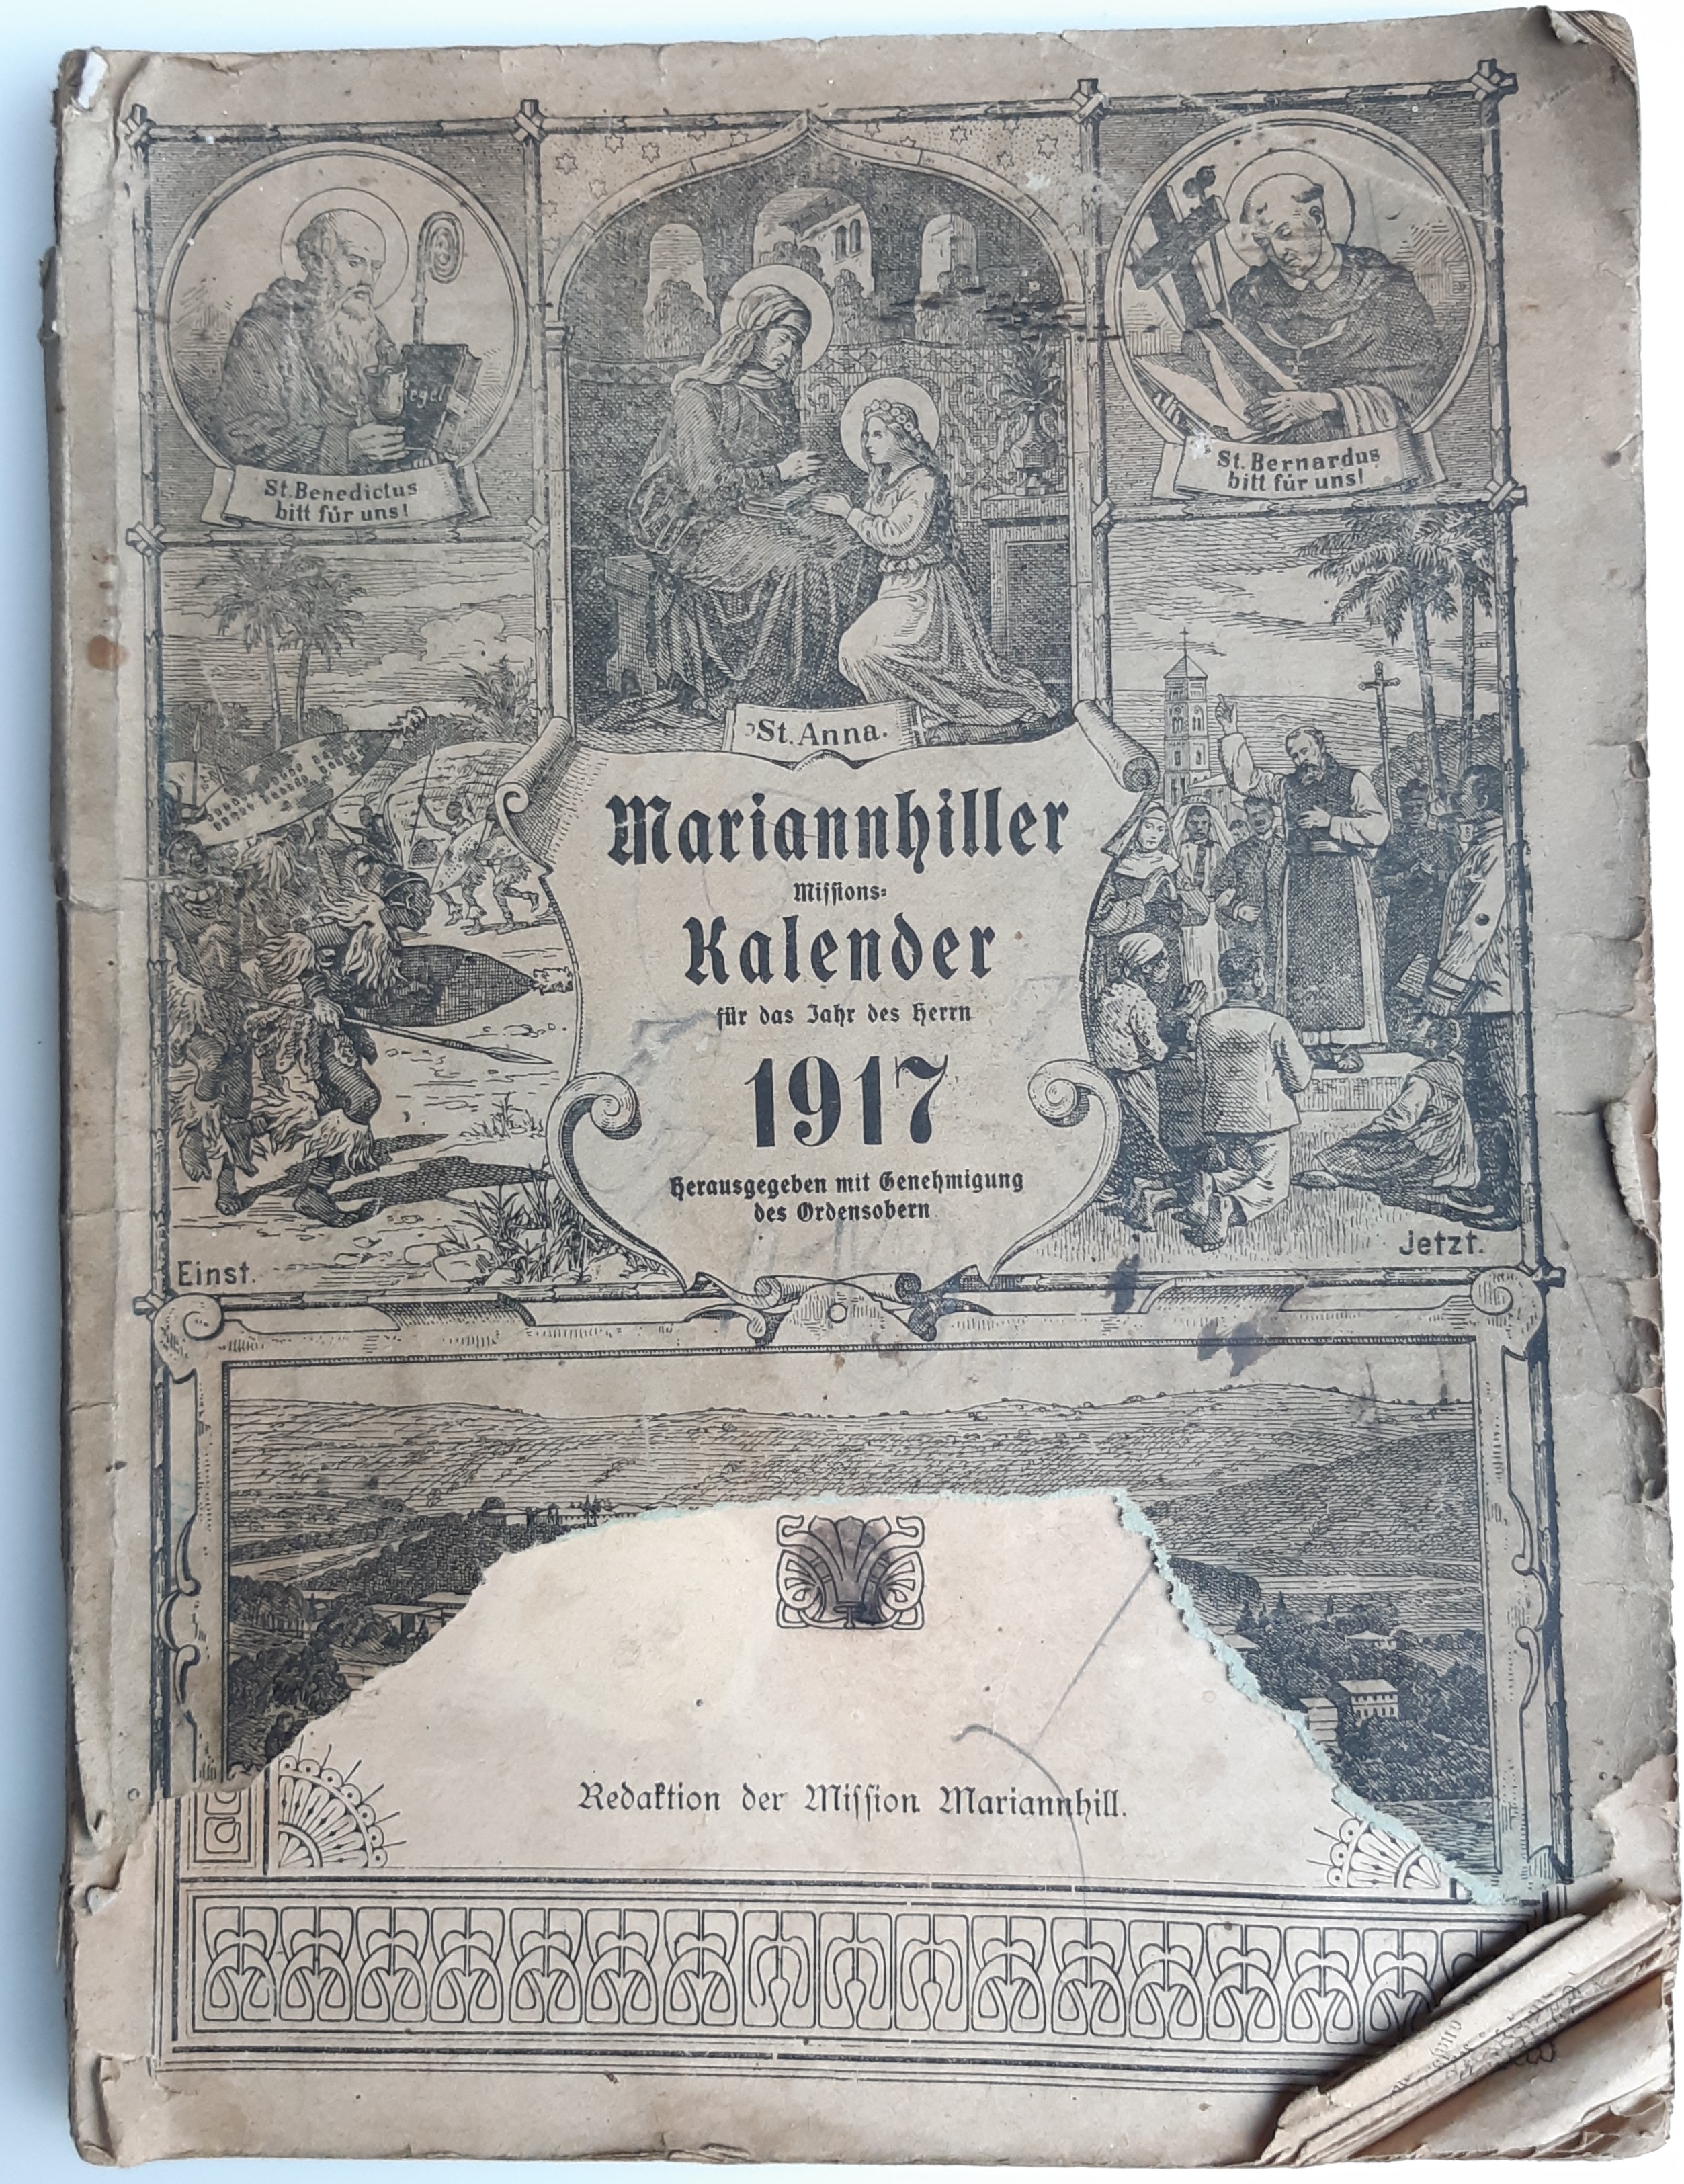 Kalender "Mariannhiller Missionskalender", 1917